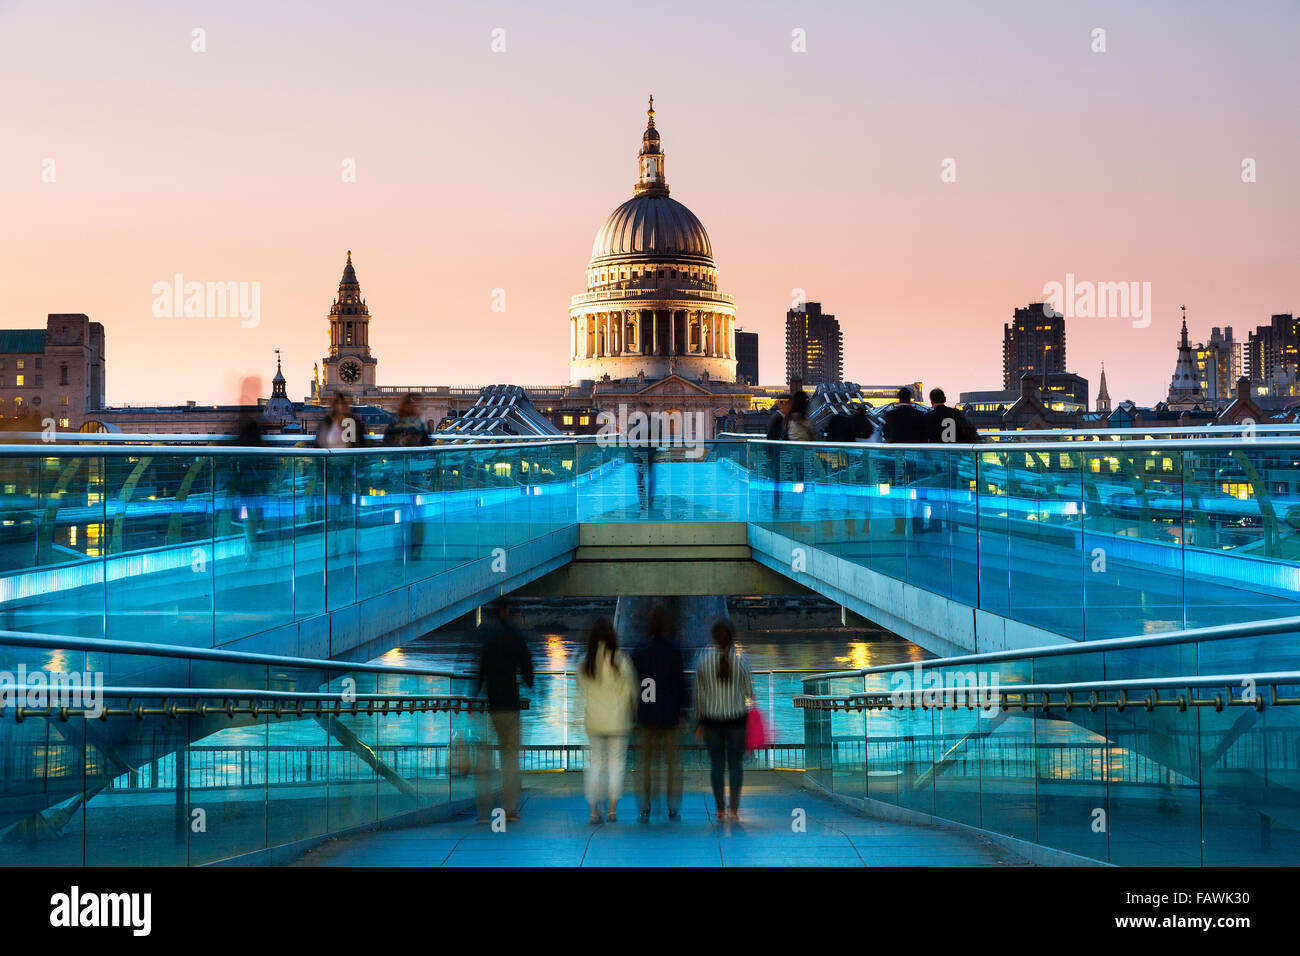 Londres, Puente del Milenio al atardecer Foto de stock